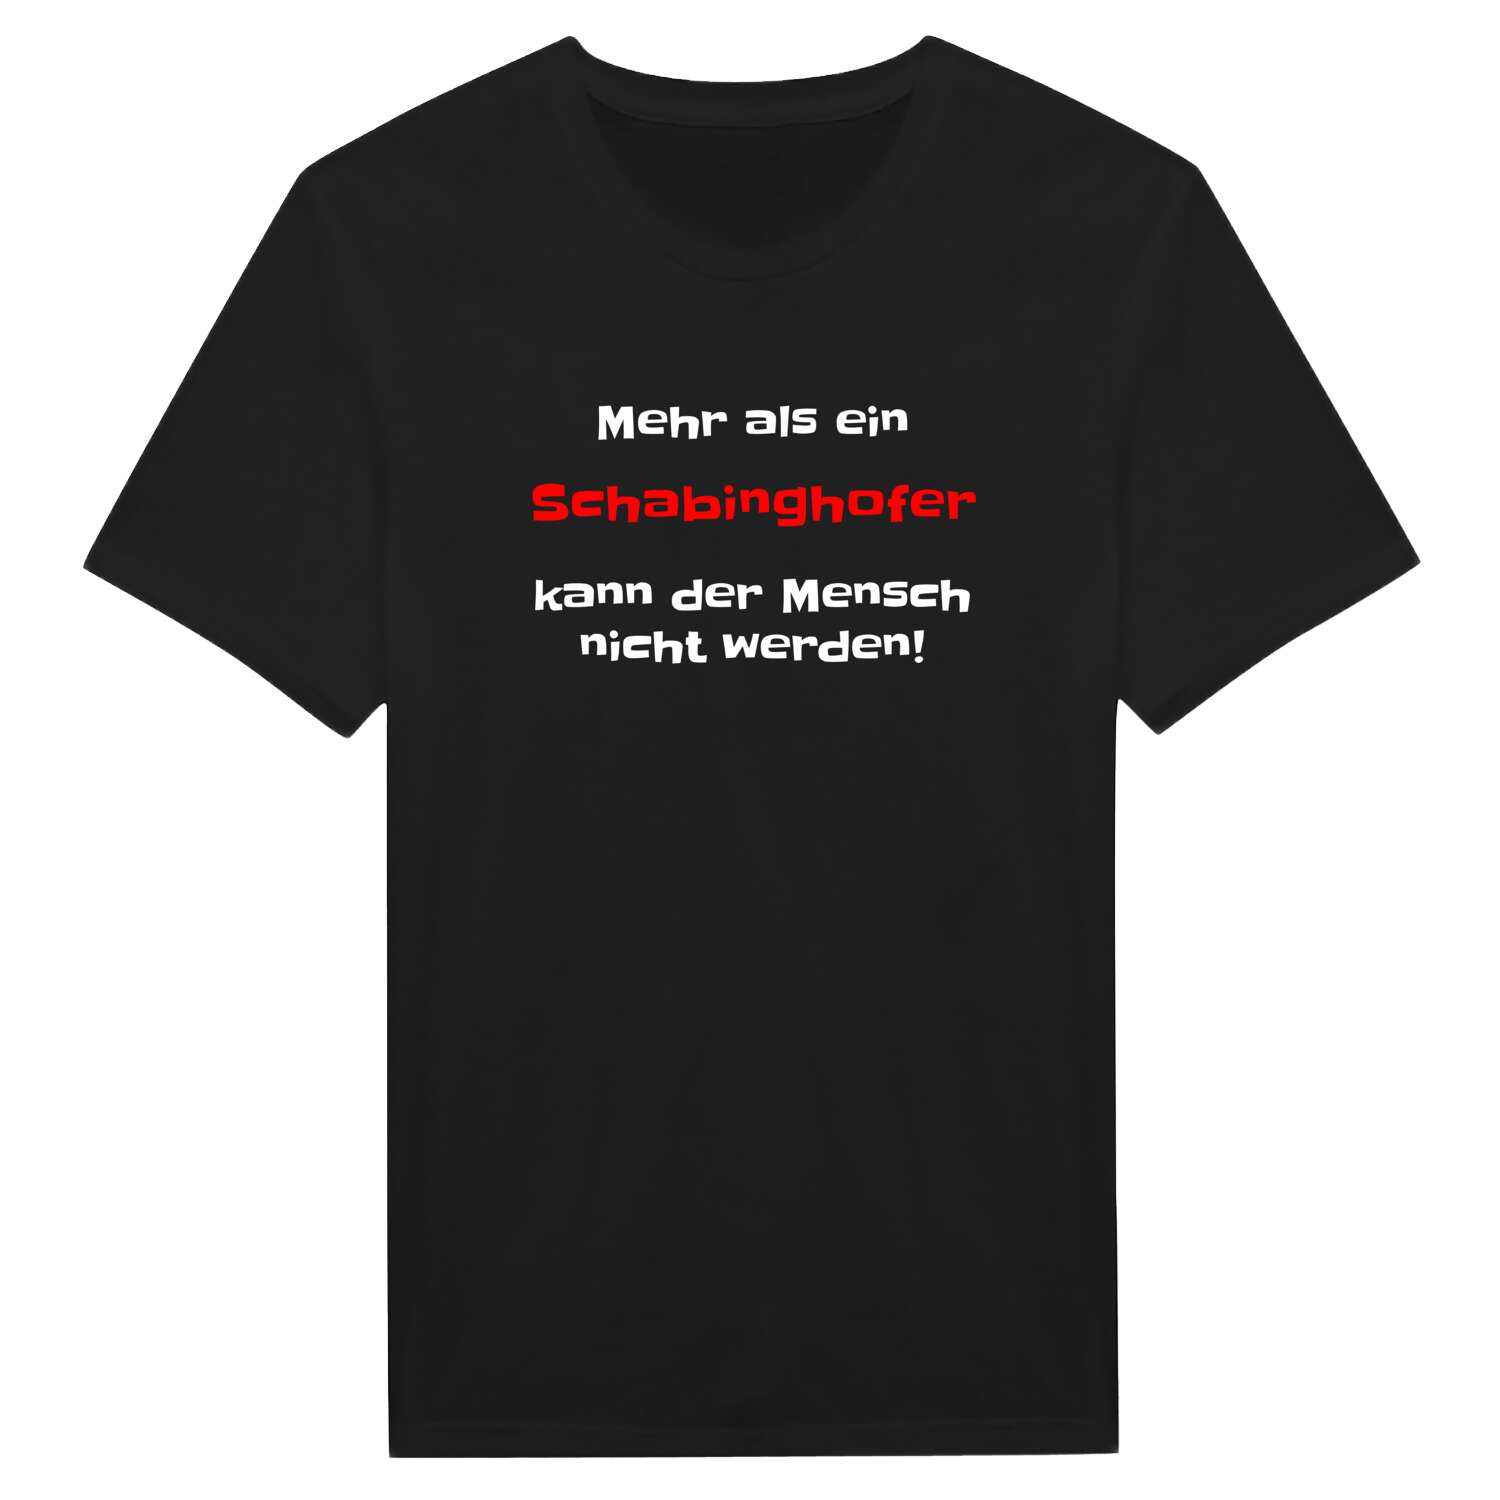 Schabinghof T-Shirt »Mehr als ein«